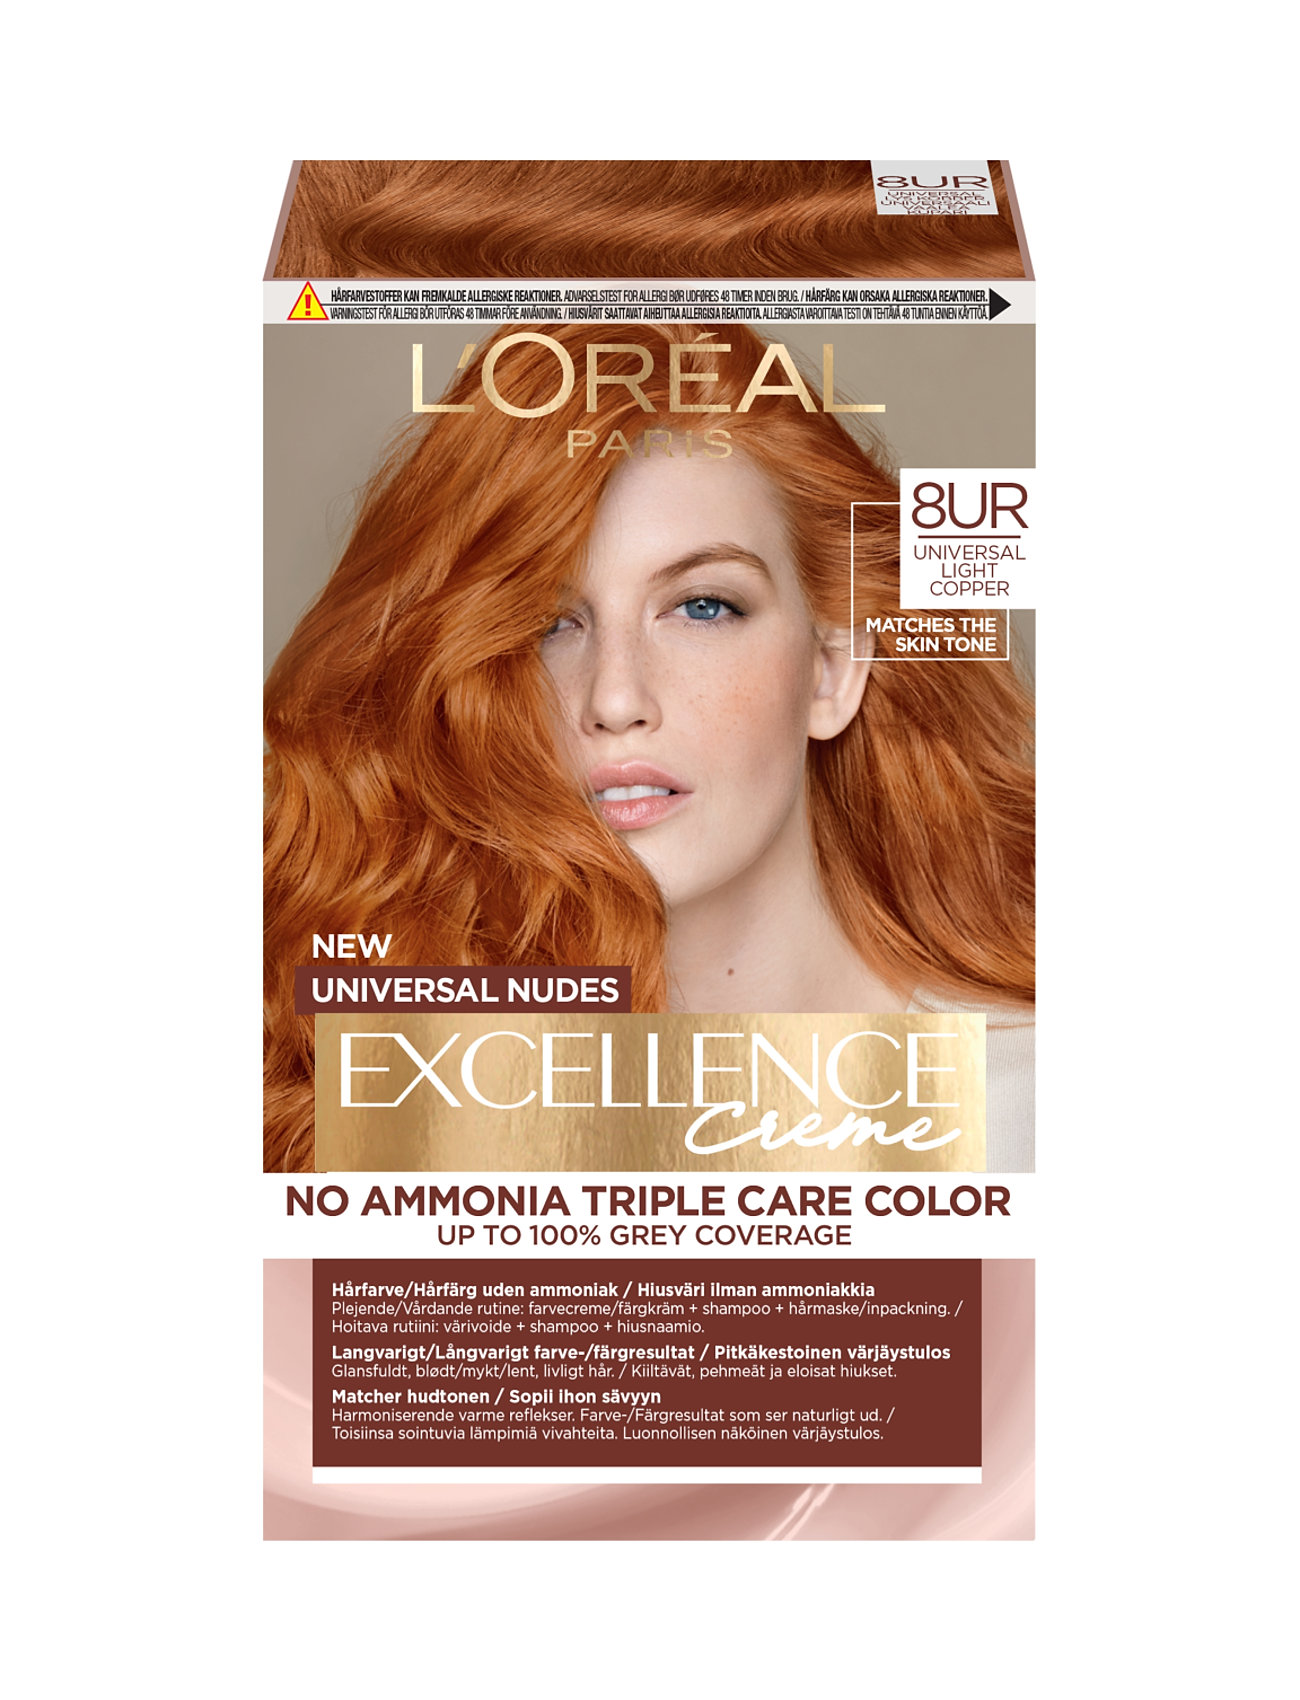 L'oréal Paris, Excellence, Universal Nudes, Hair Color That Matches All Skin T S Beauty Women Hair Care Color Treatments Nude L'Oréal Paris